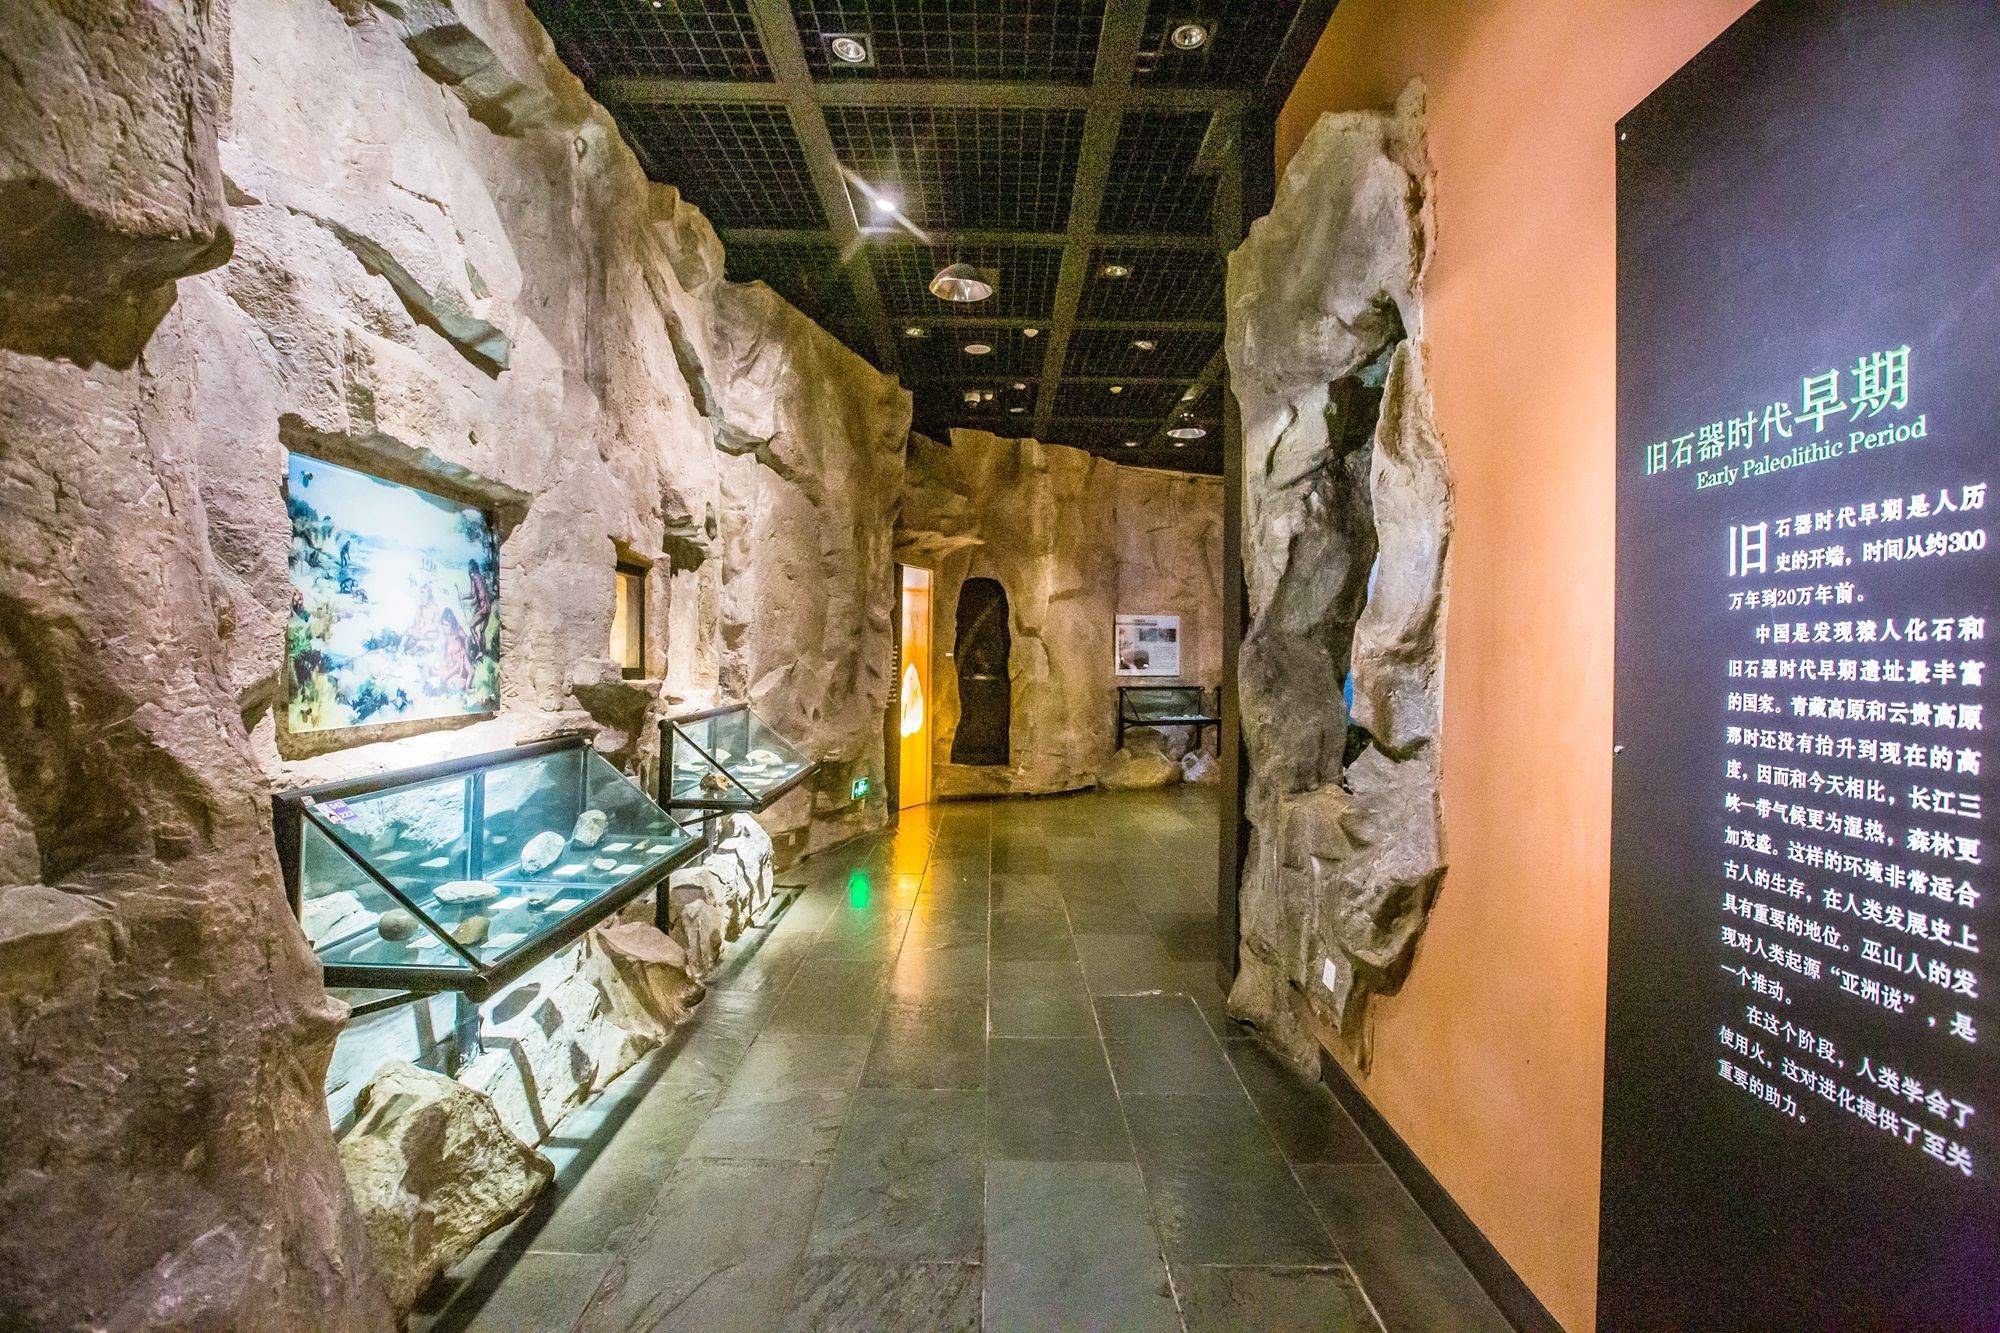 重庆中国三峡博物馆,感受巴渝文化,探秘巴山蜀水里的远古文明